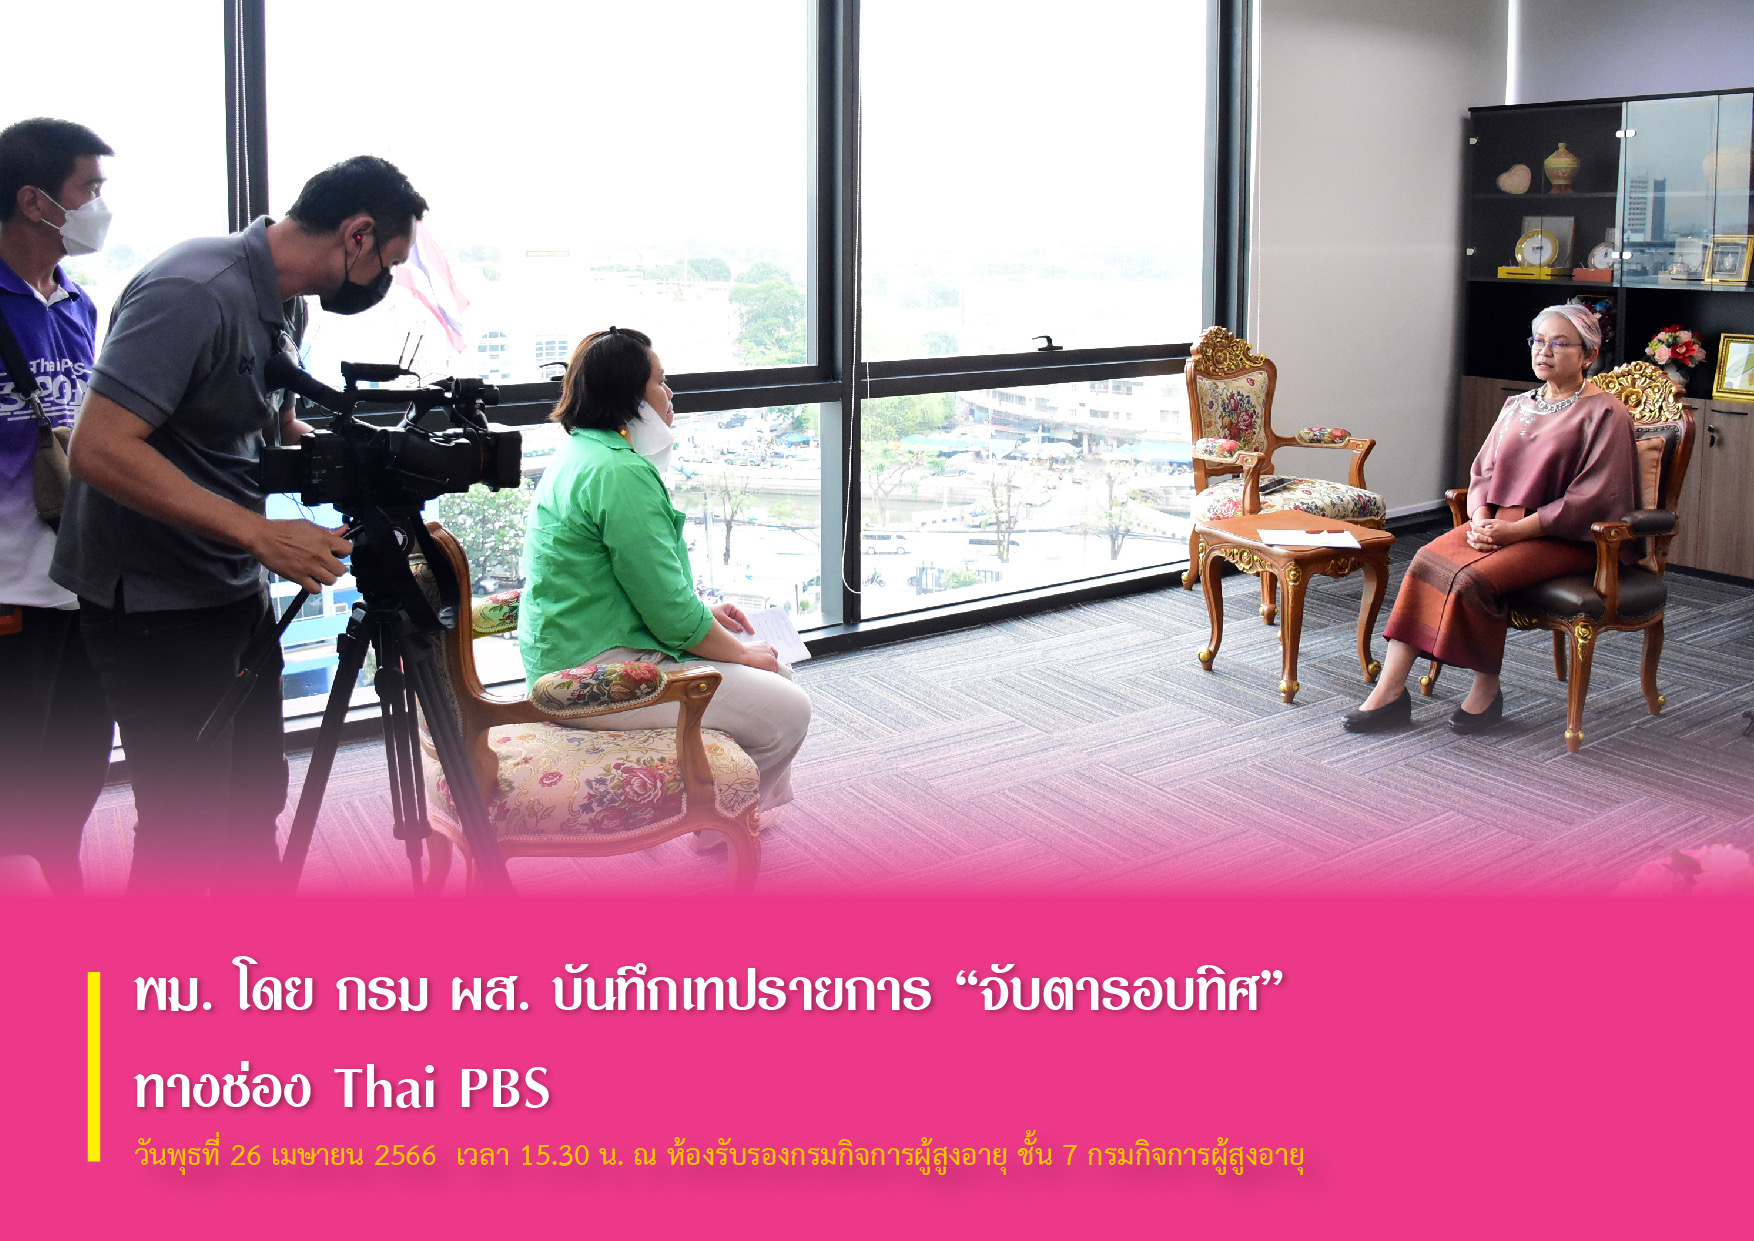 พม. โดย กรม ผส. บันทึกเทปรายการ “จับตารอบทิศ” ทางช่อง Thai PBS